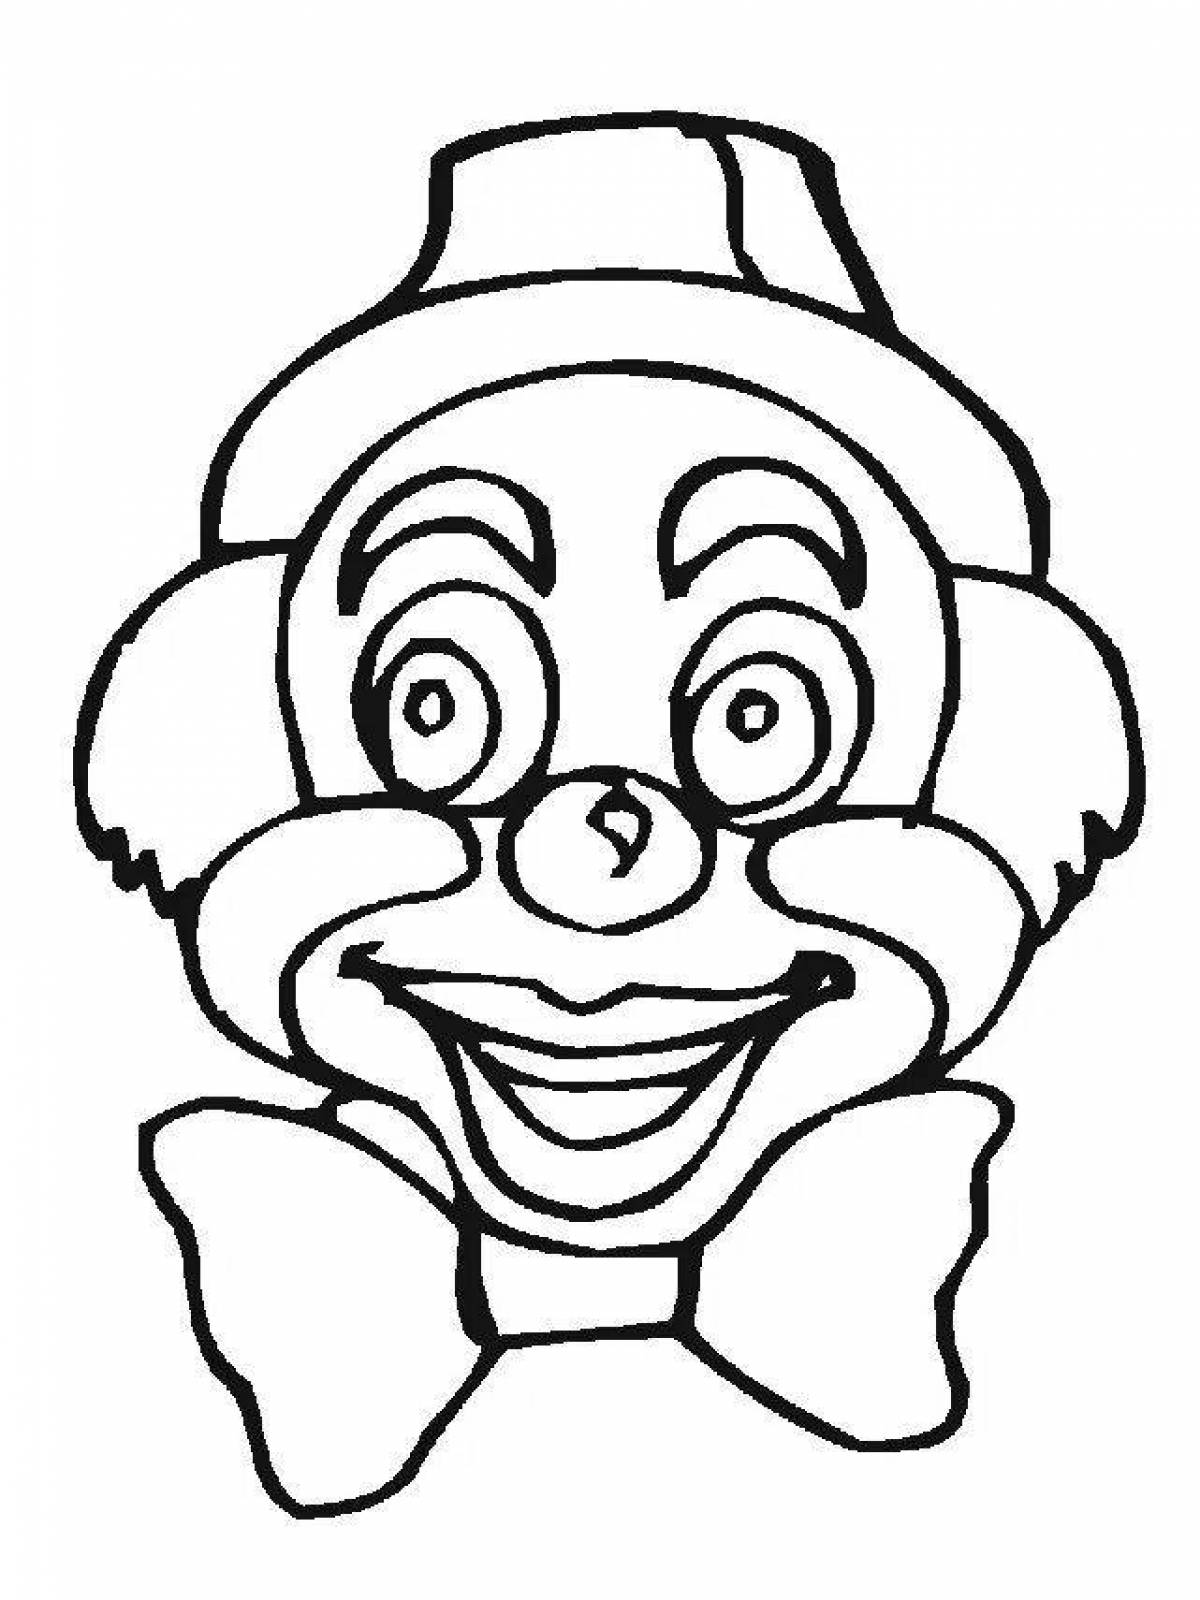 Лицо клоуна раскраска распечатать. Клоун раскраска. Веселый клоун раскраска. Раскраска весёлый клоун для детей. Лицо клоуна раскраска.